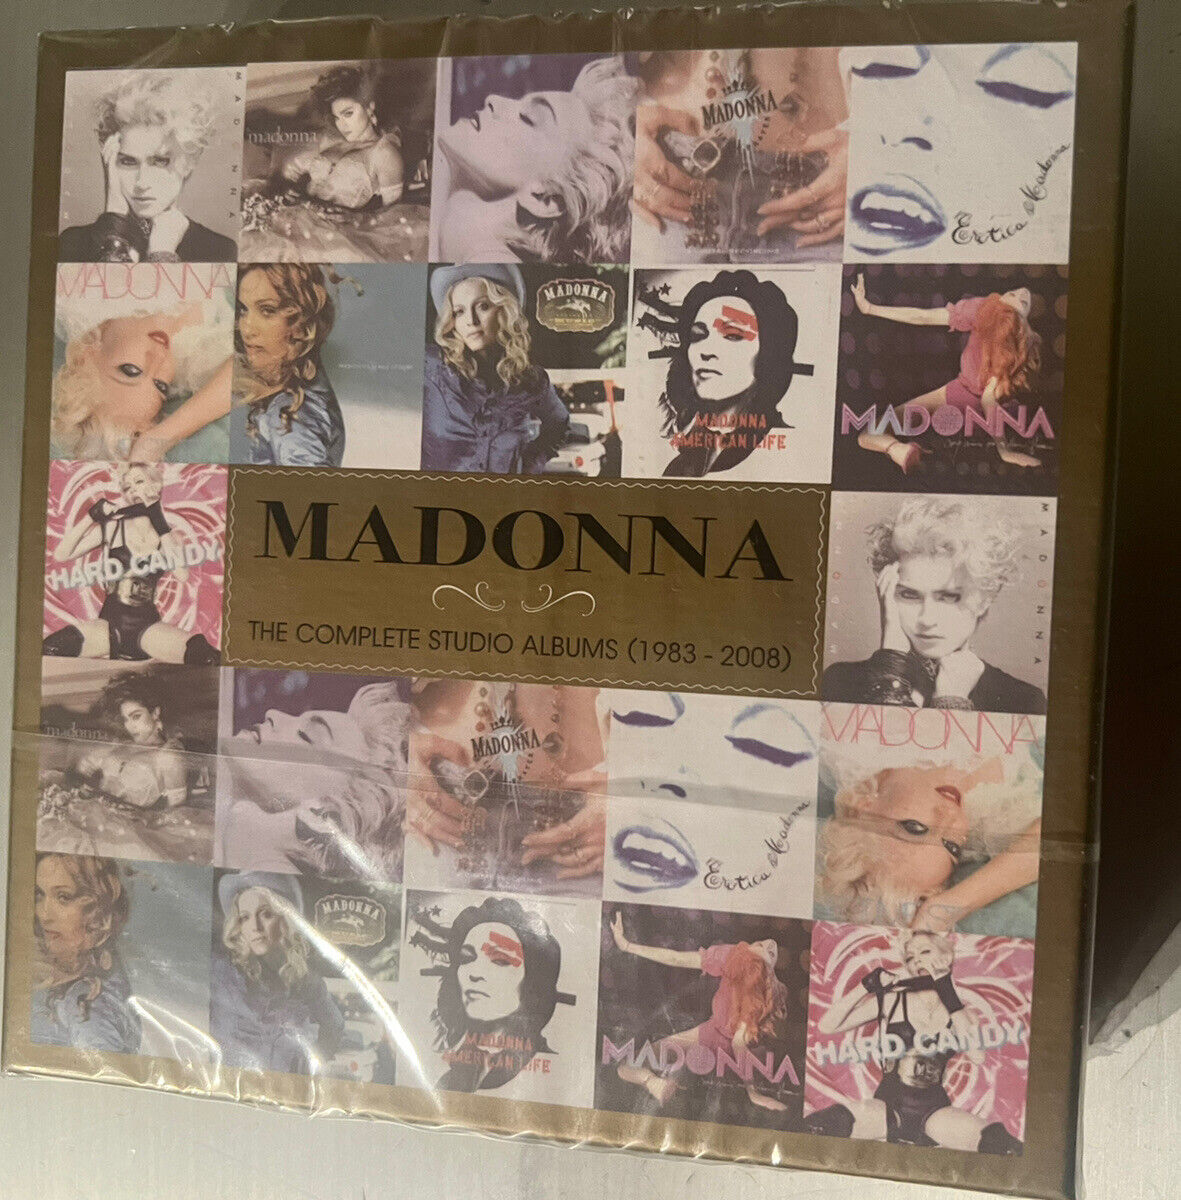 MADONNA CELEBRATION COMPLETE STUDIO ALBUMS 1983-2008 11-CD BOX SET SEALED NEW!